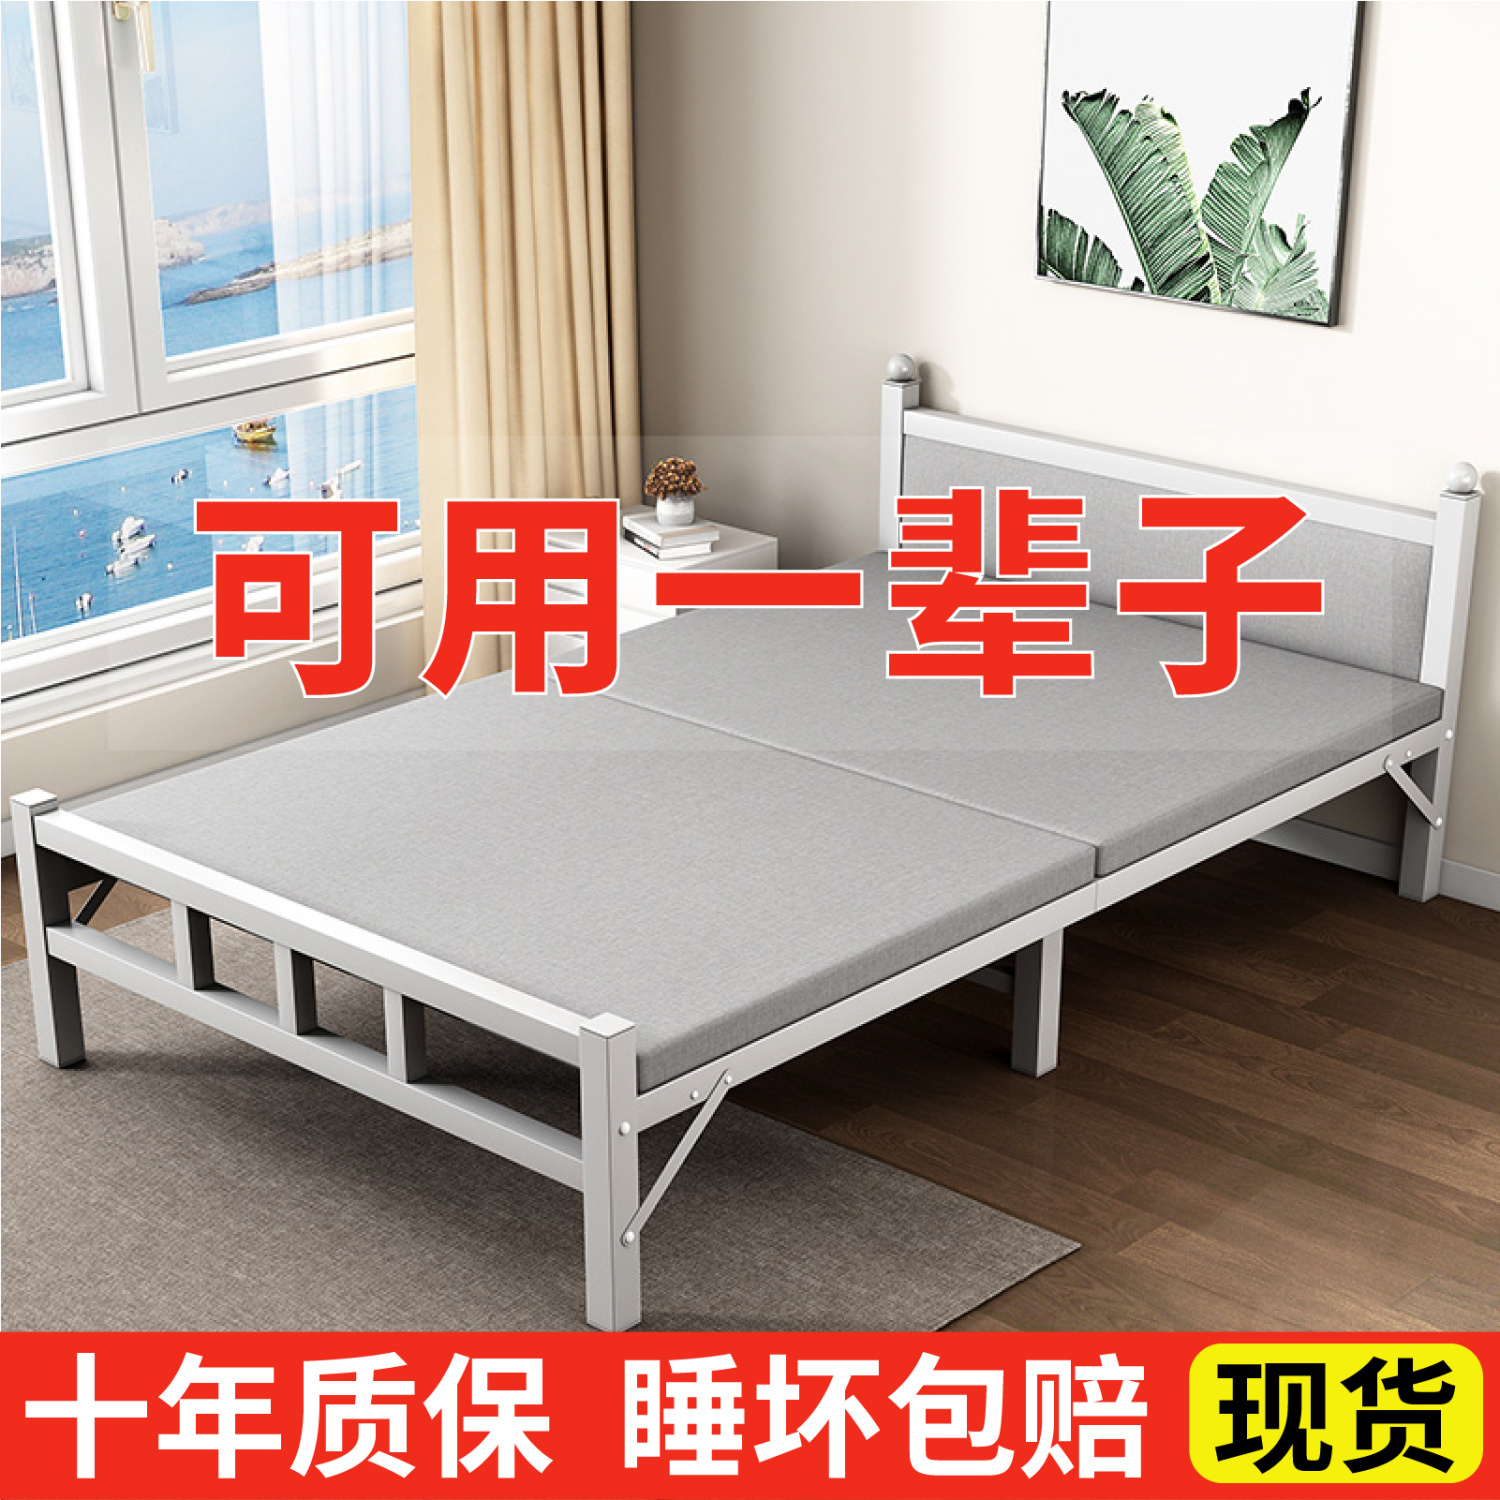 折叠床单人床家用成人午休床办公室简易床便携式陪护床出租房铁床